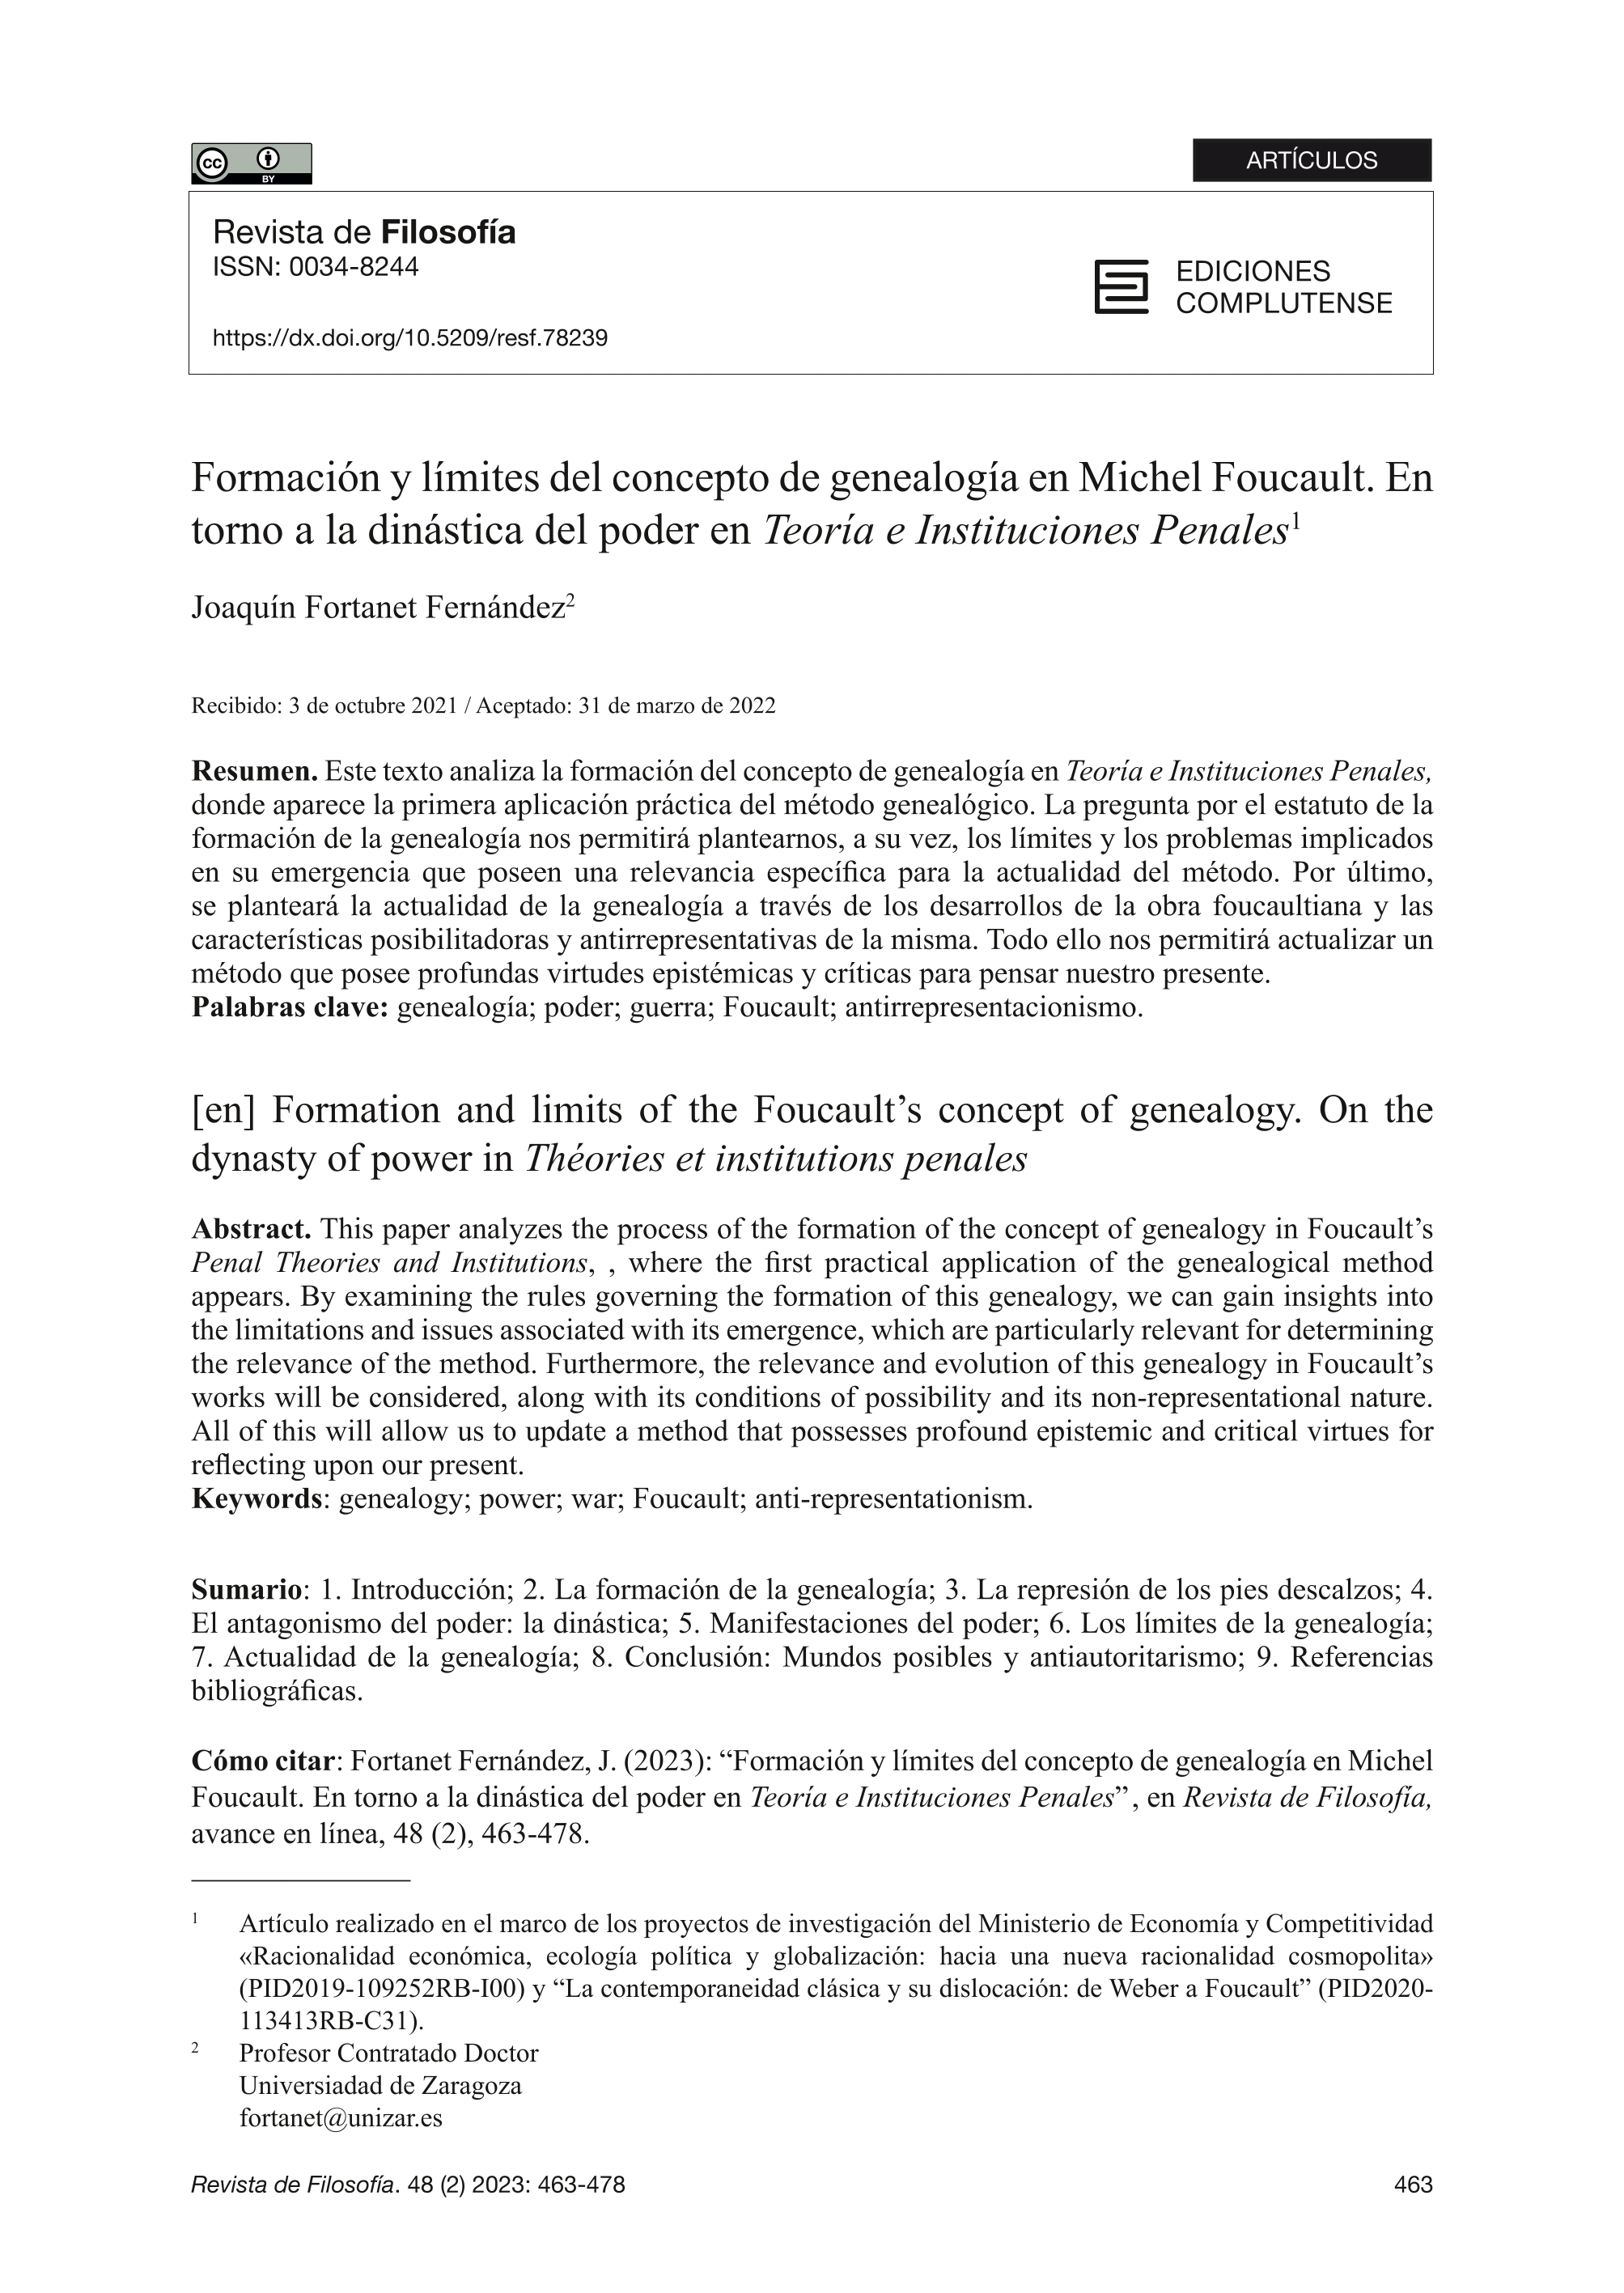 Formación y límites del concepto de genealogía en Michel Foucault. En torno a la dinástica del poder en Teoría e Instituciones Penales